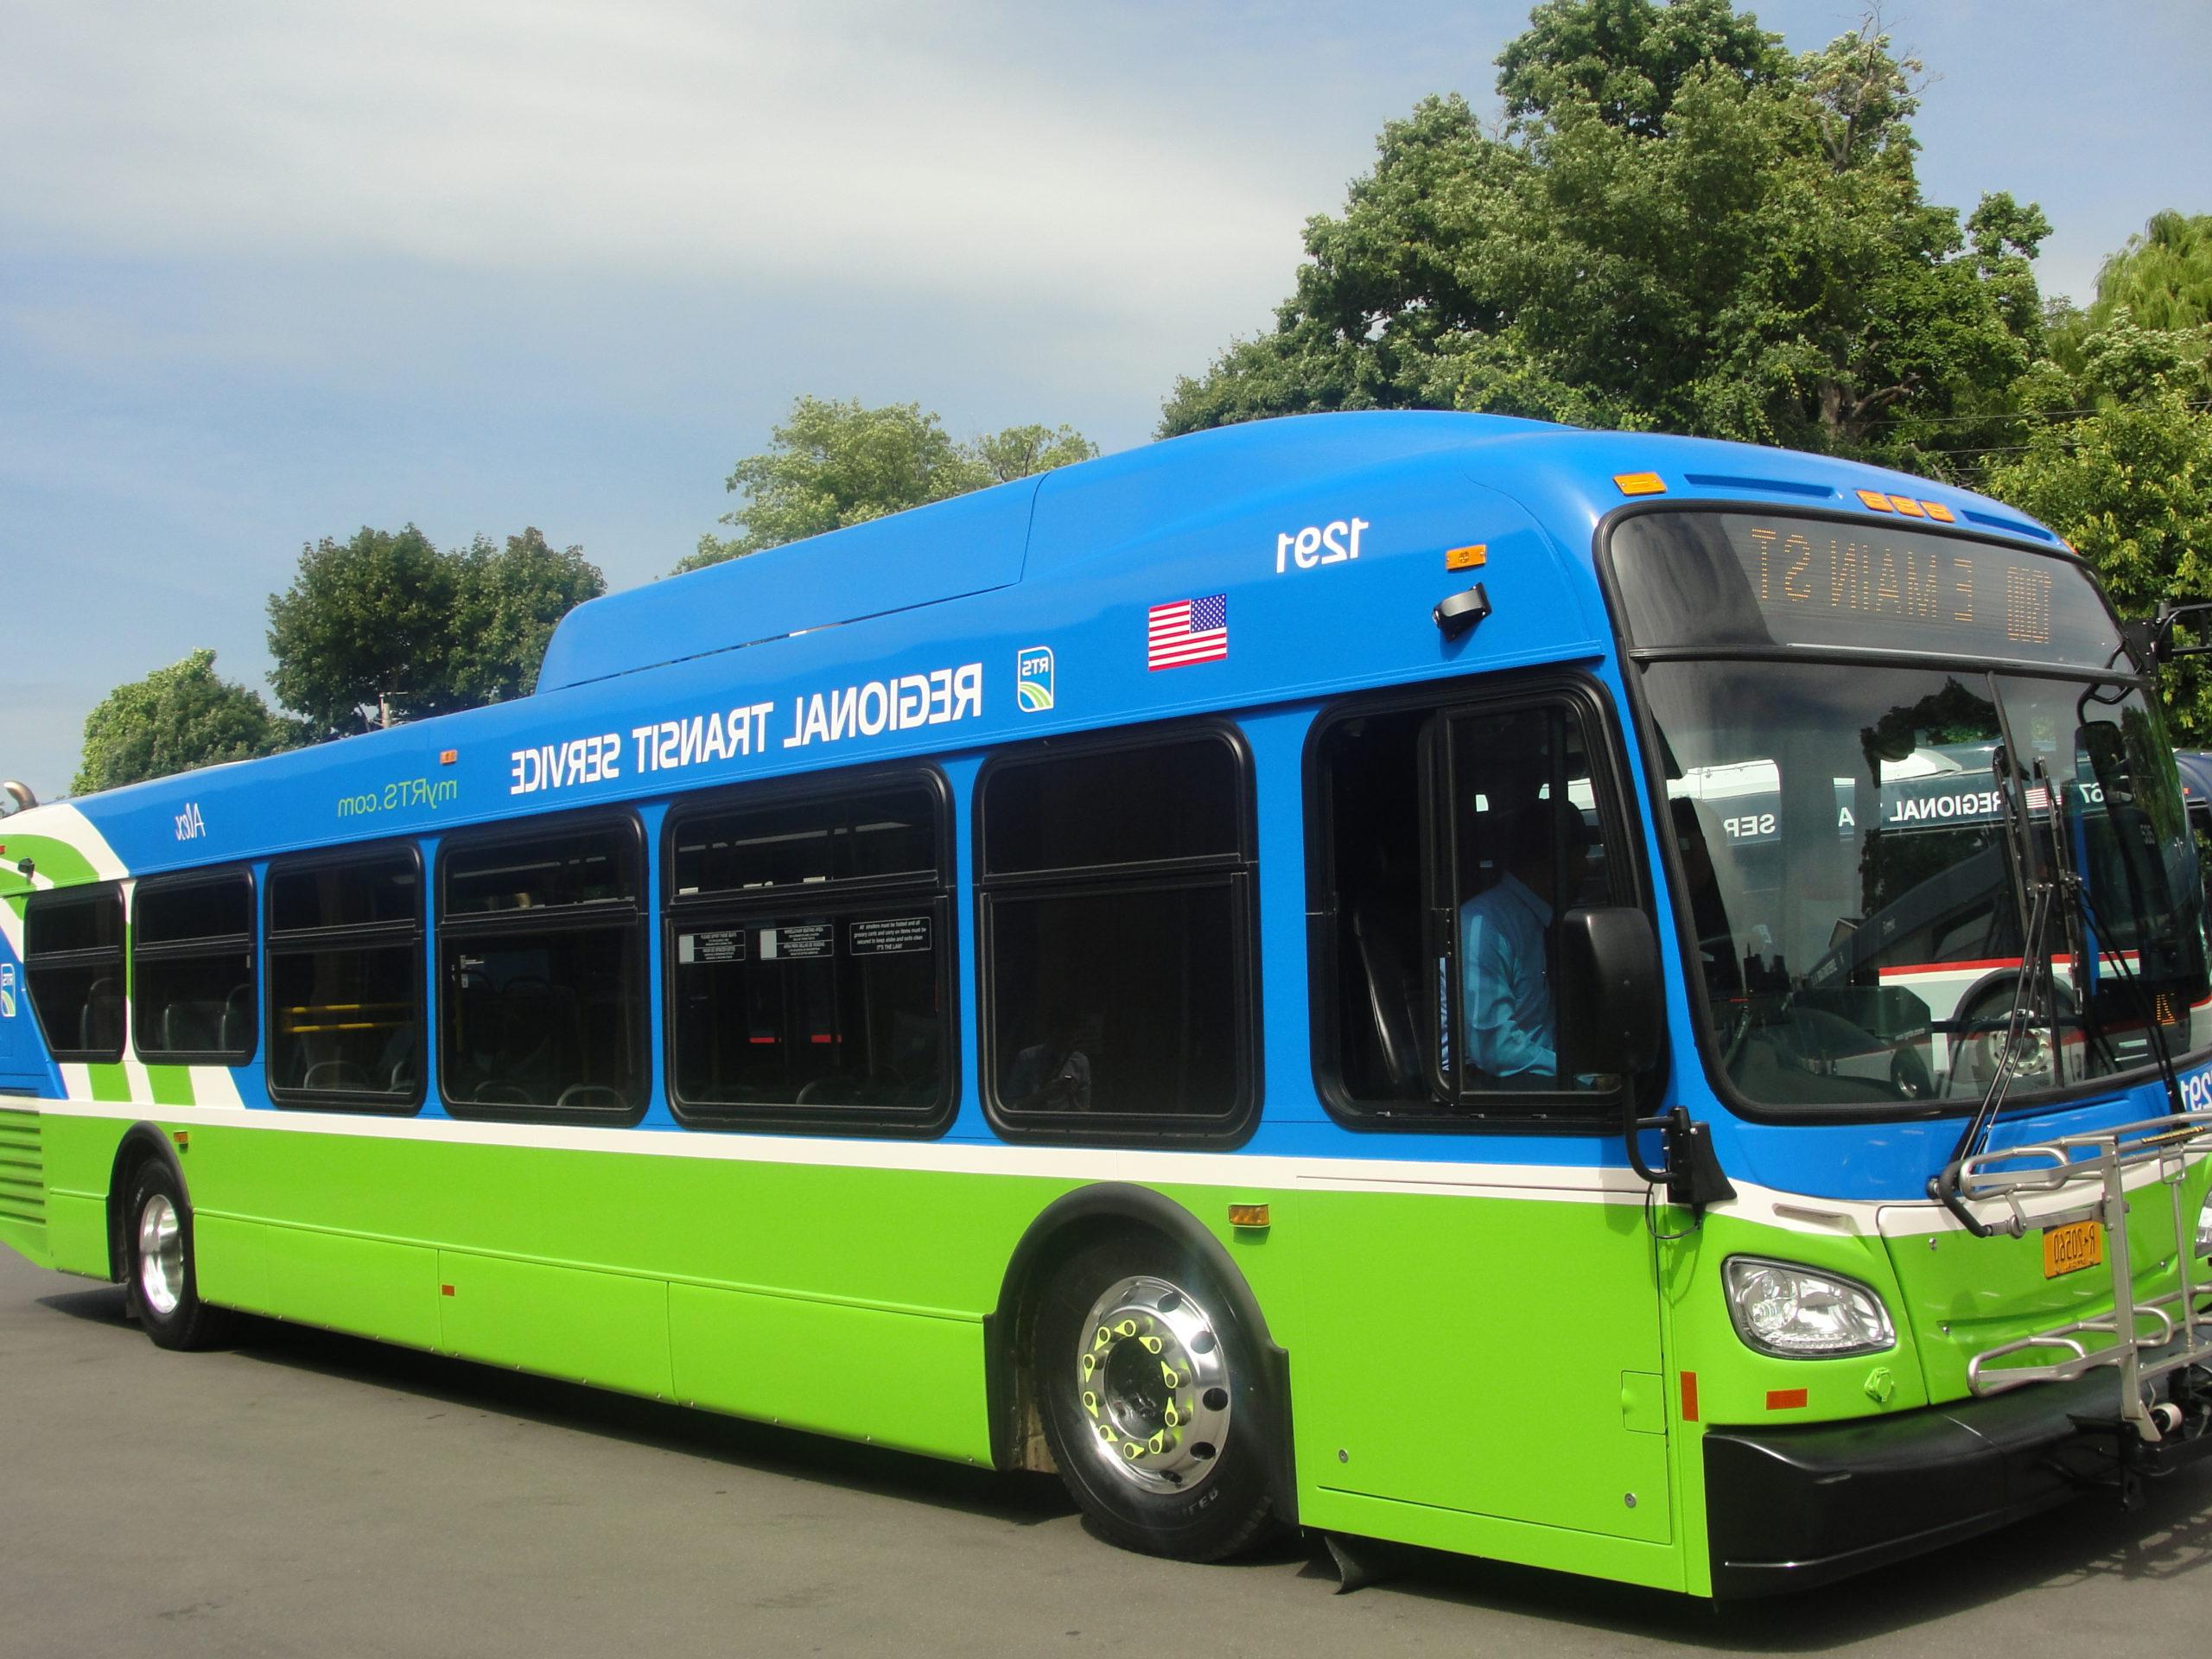 城市街道上的蓝绿相间的RTS巴士